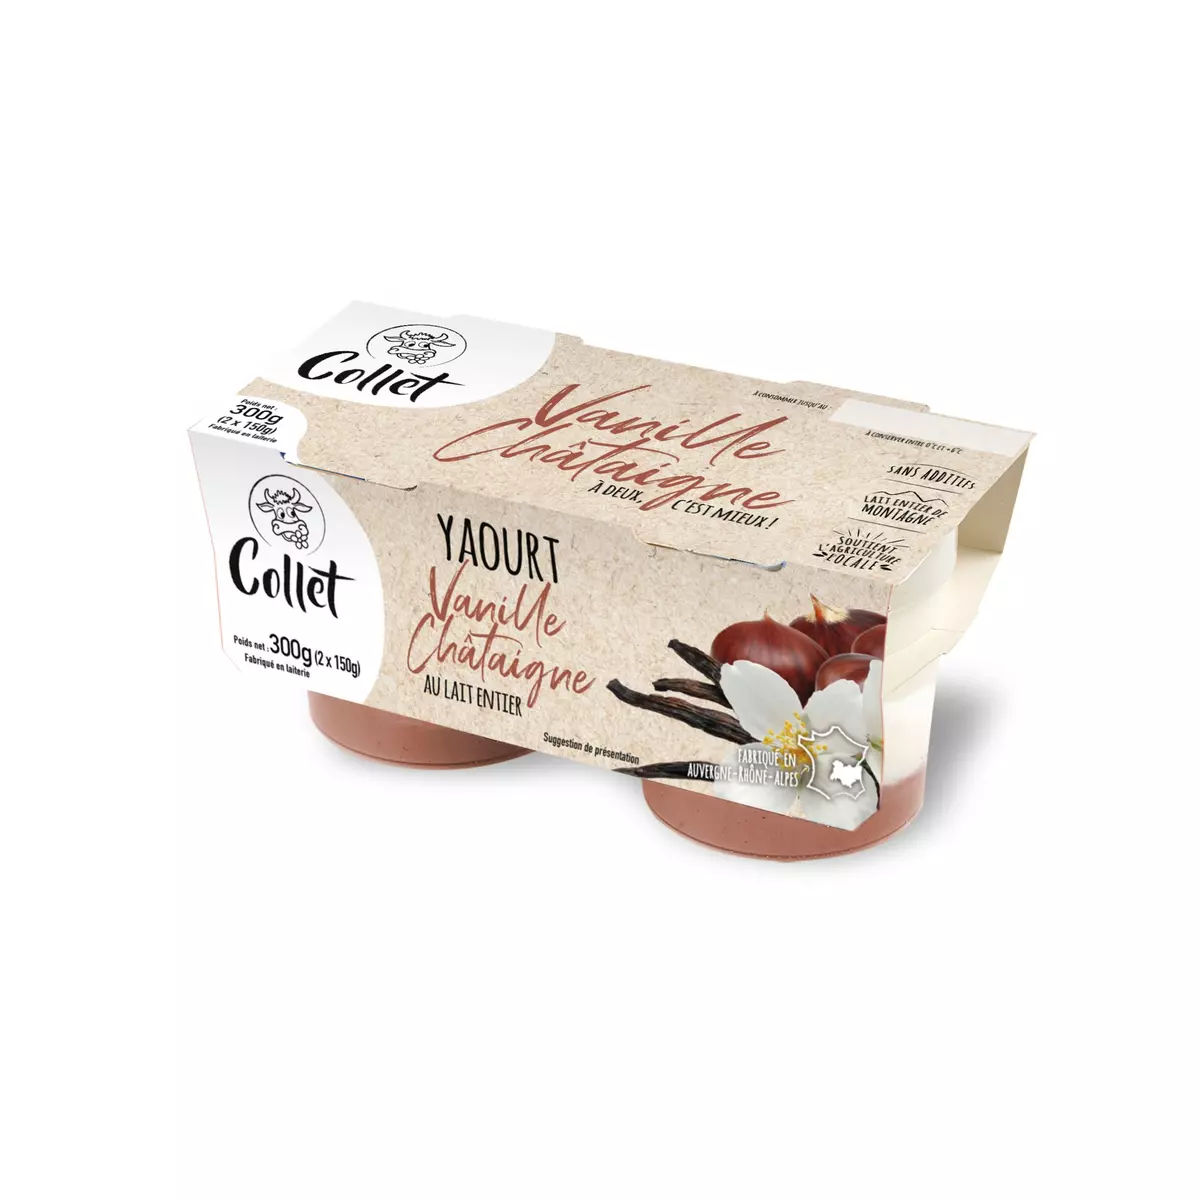 FERME COLLET Yaourt au lait entier vanille sur lit châtaigne 2x150g